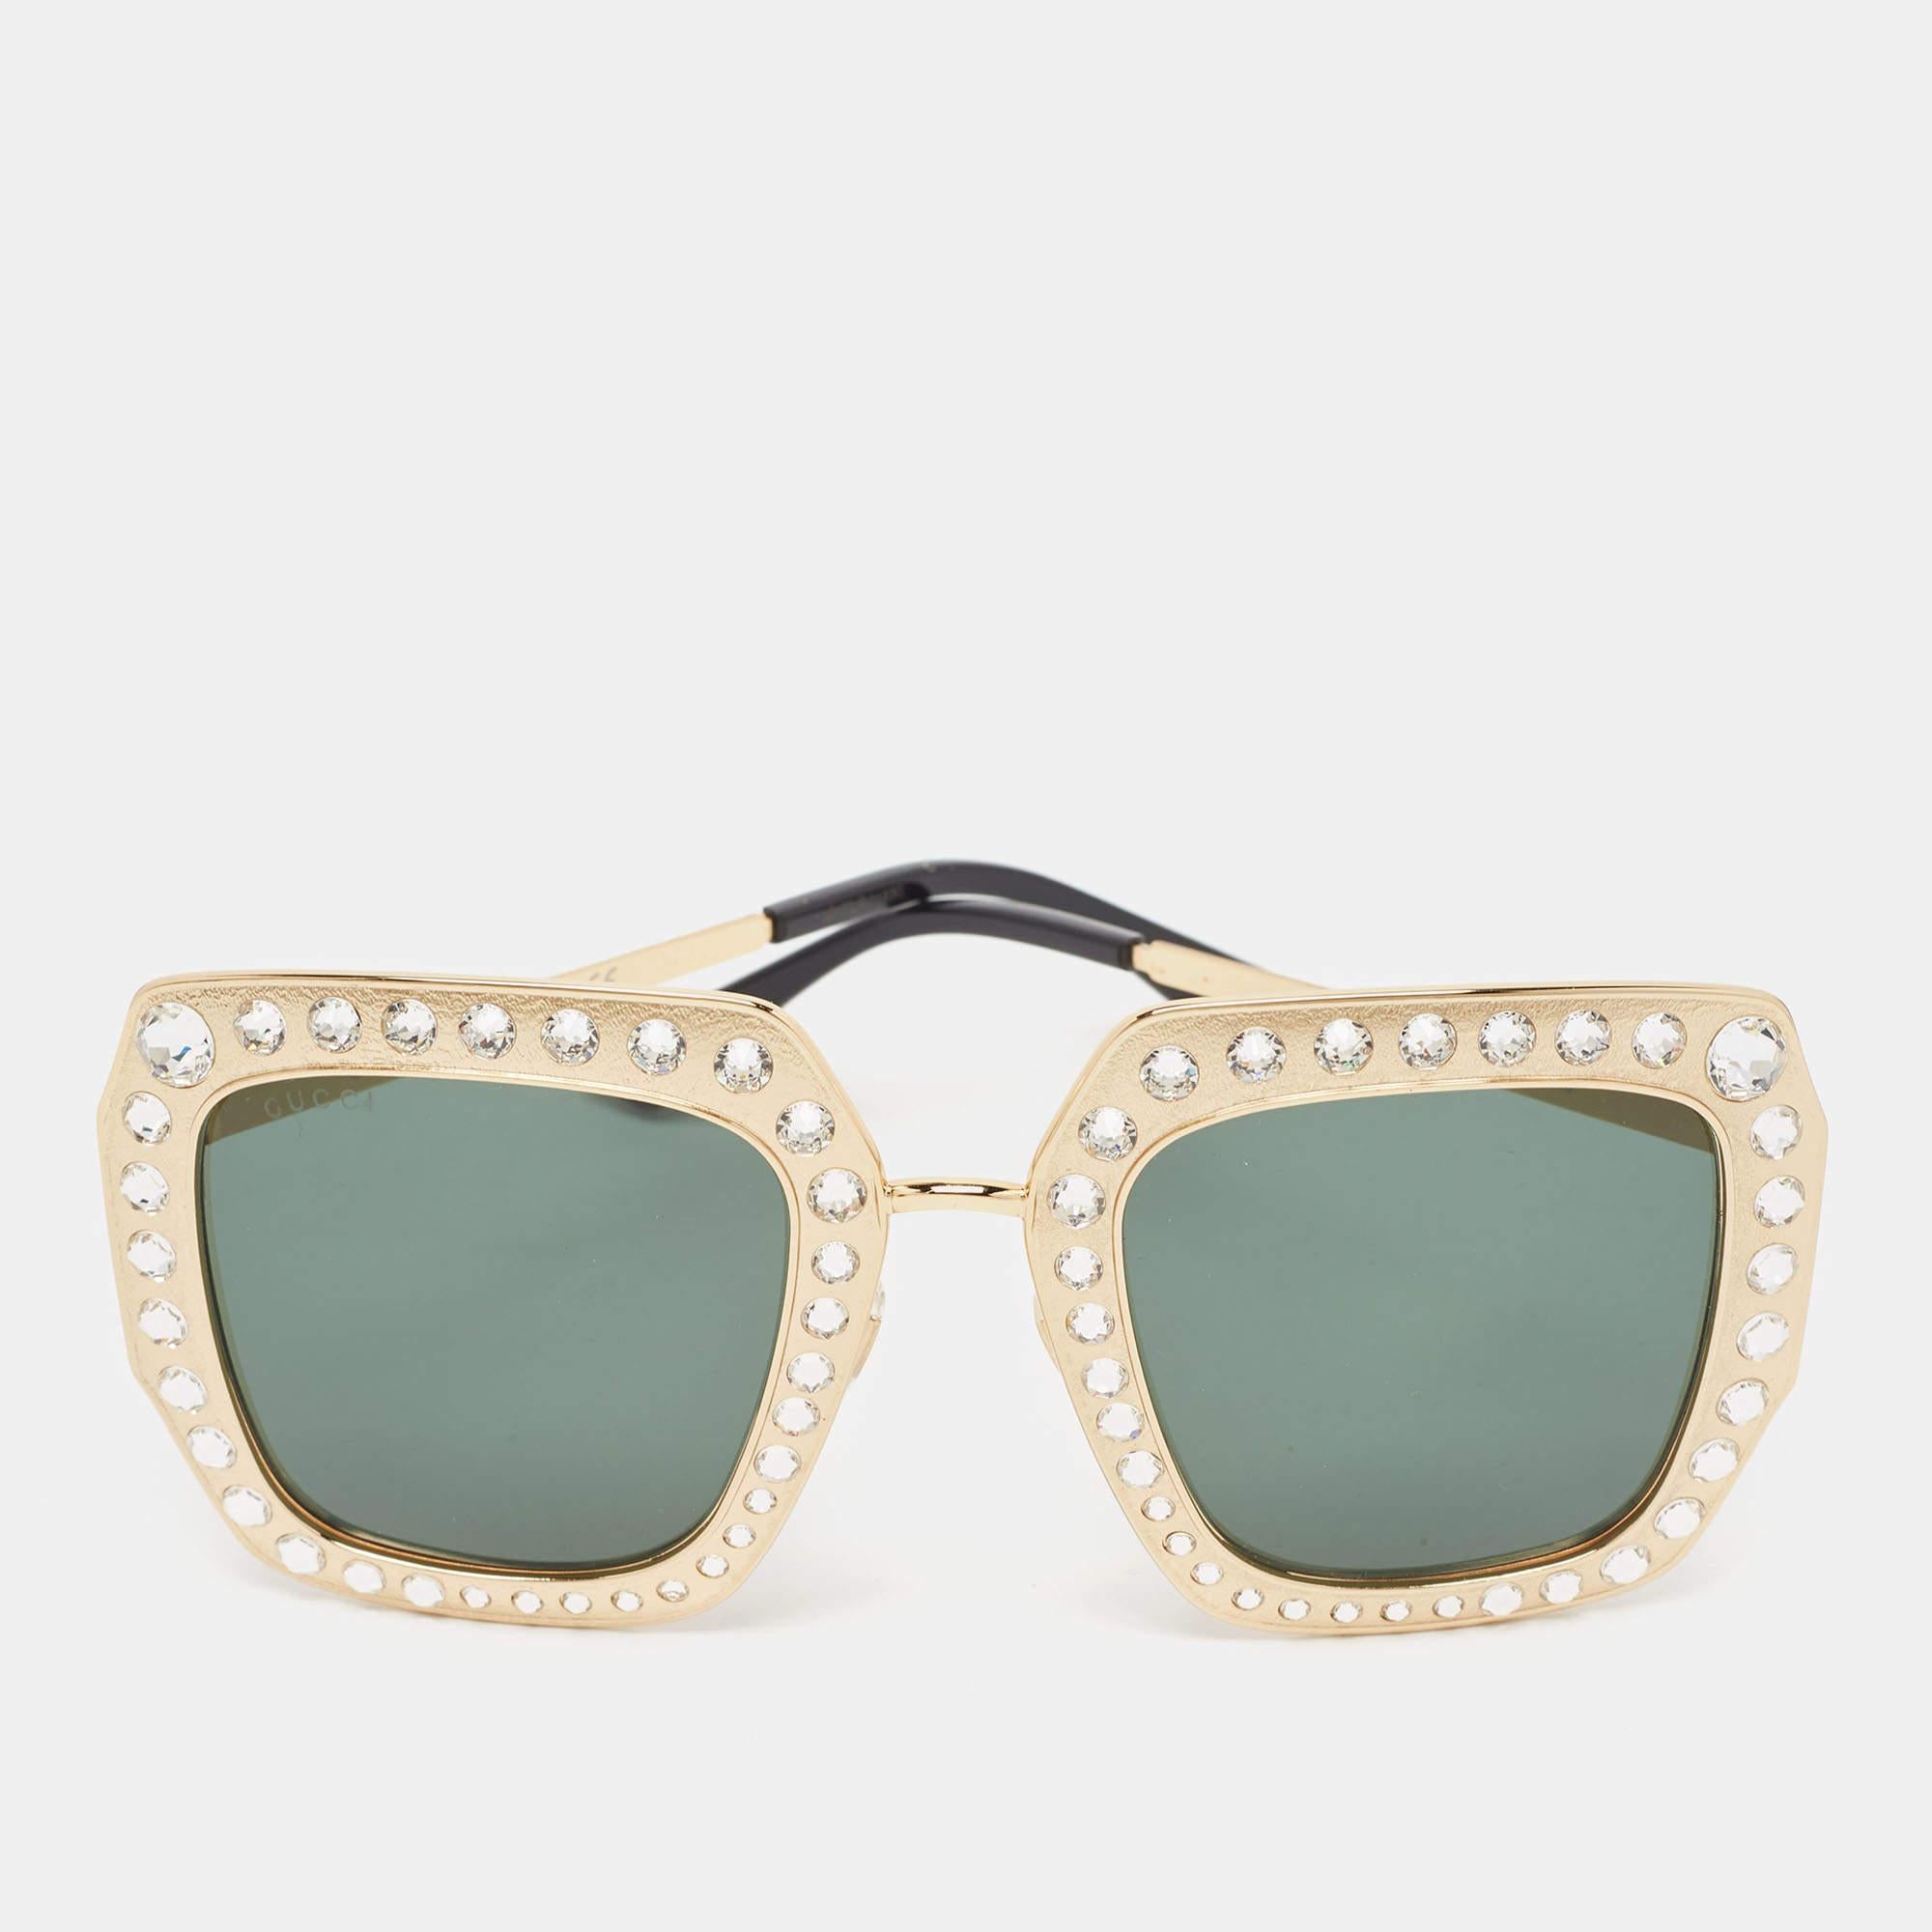 Cette paire de lunettes de soleil Gucci est idéale pour une journée au soleil ou des séances photos en intérieur. Il s'agit d'un accessoire à part entière. La monture en or est ornée de cristaux sur le devant.

Comprend : Étui d'origine, chiffon à